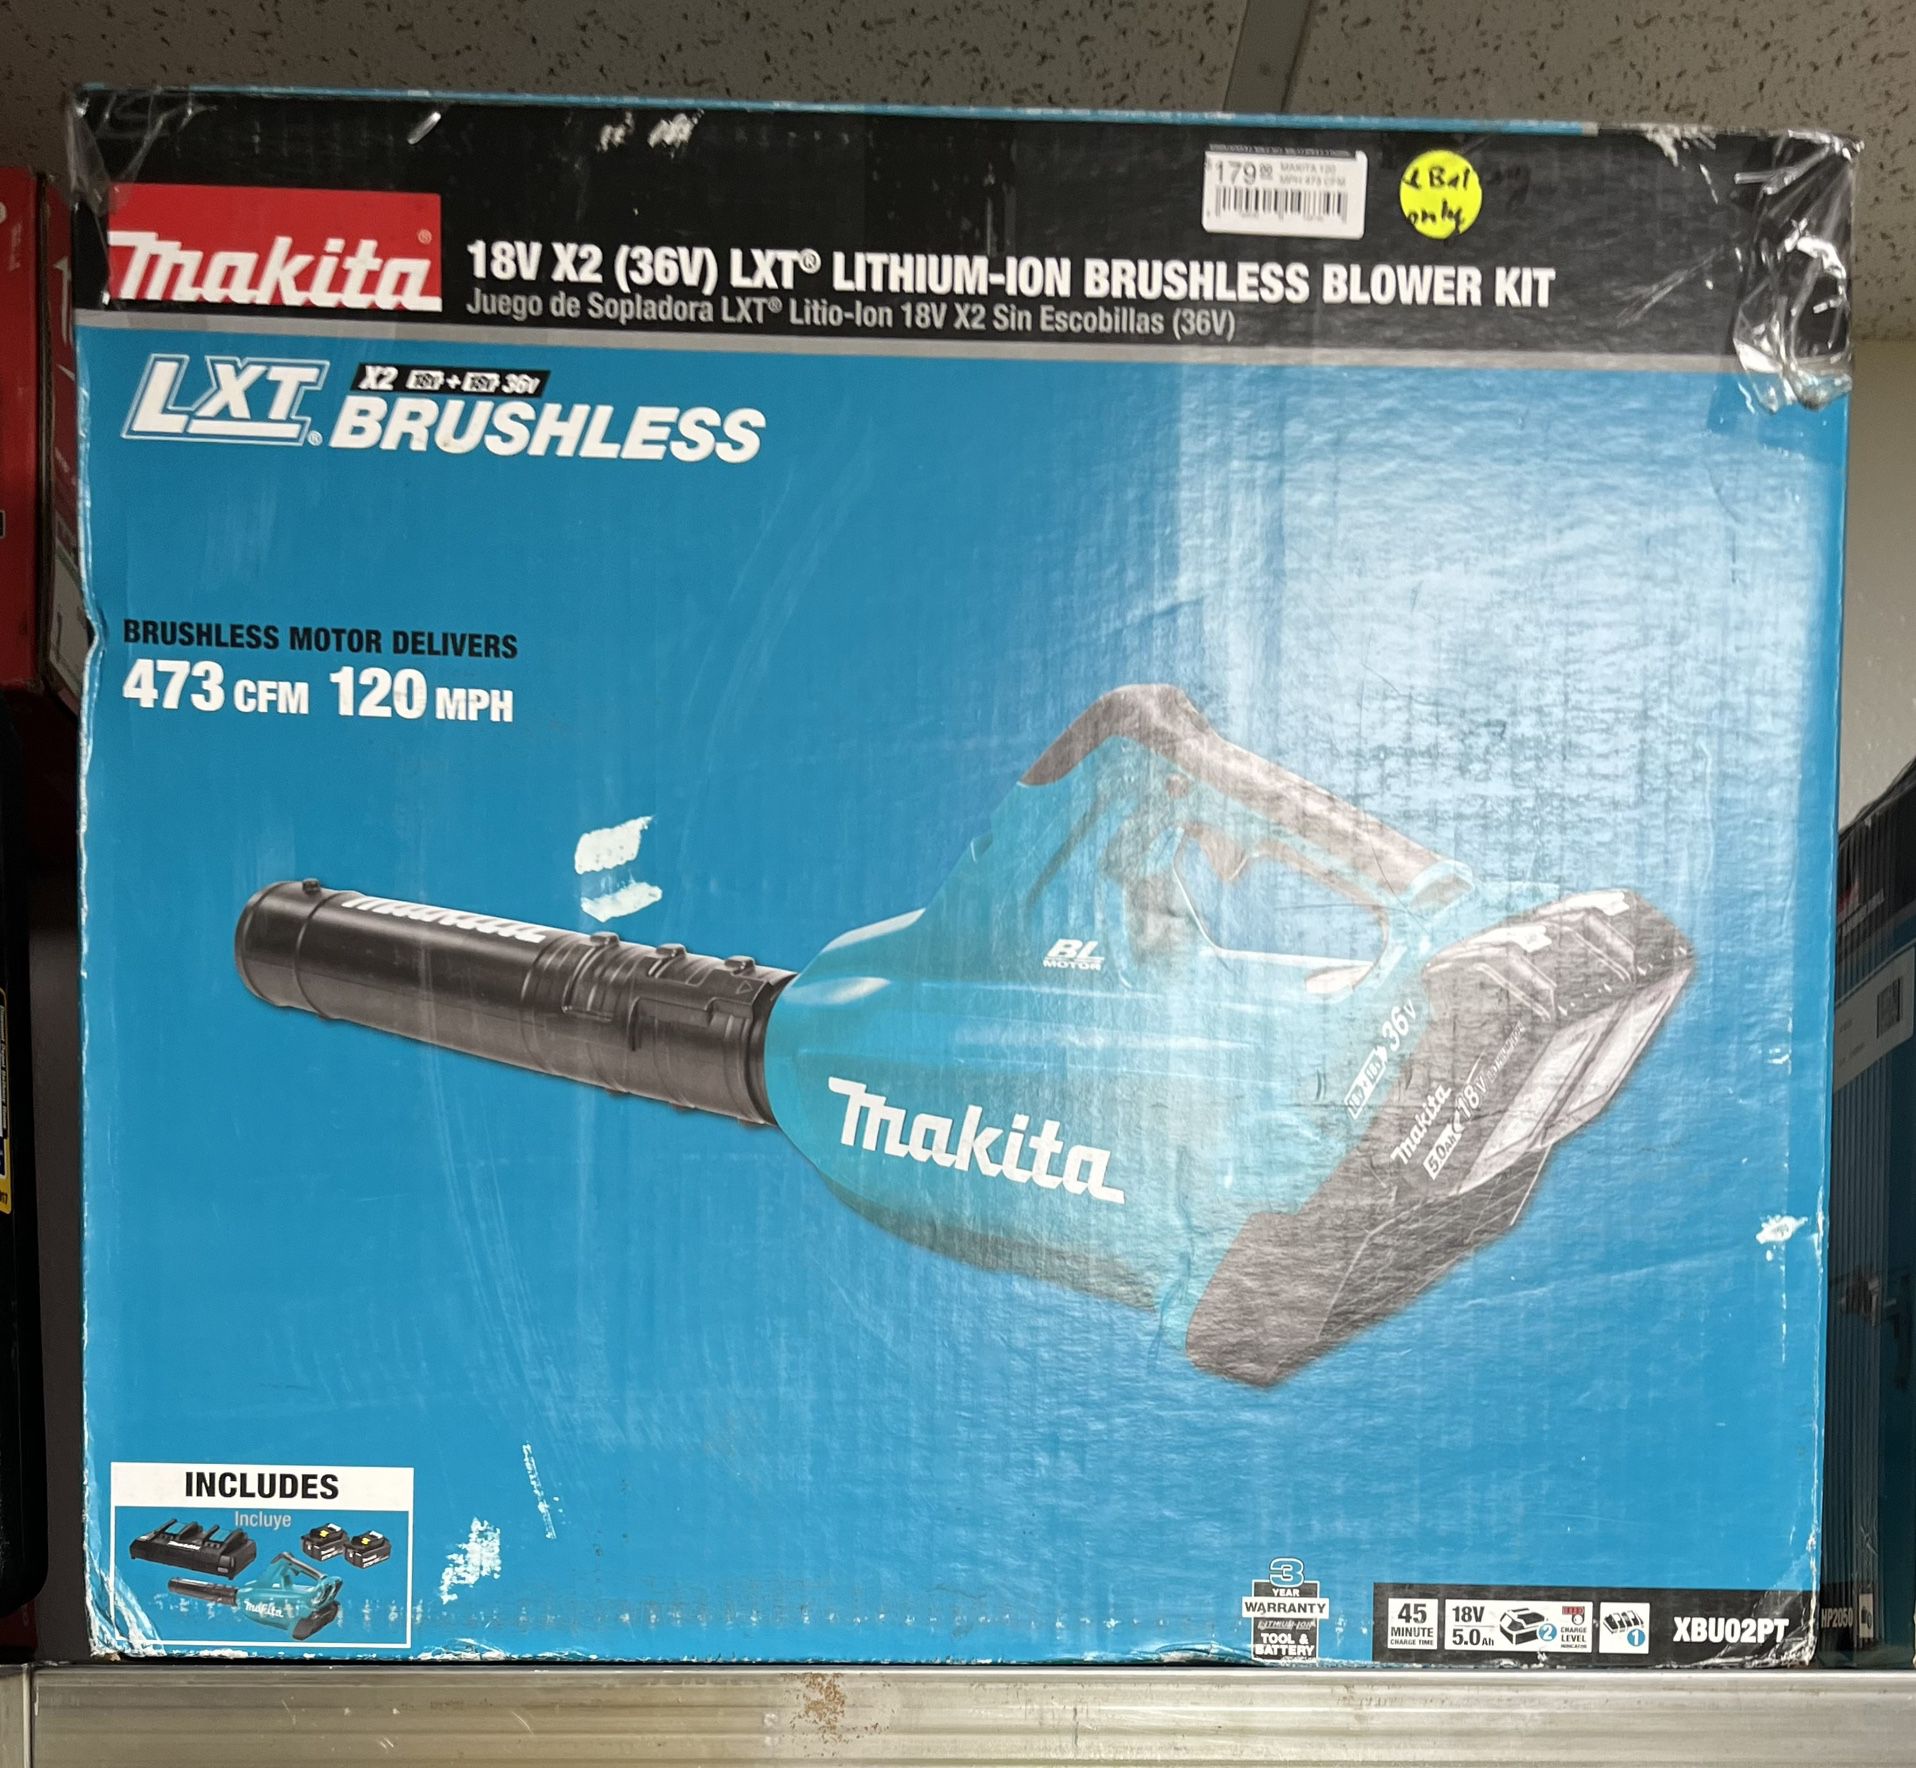 Makita 18V LITHIUM-ION BRUSHLESS BLOWER KIT (Missing 1 Battery)